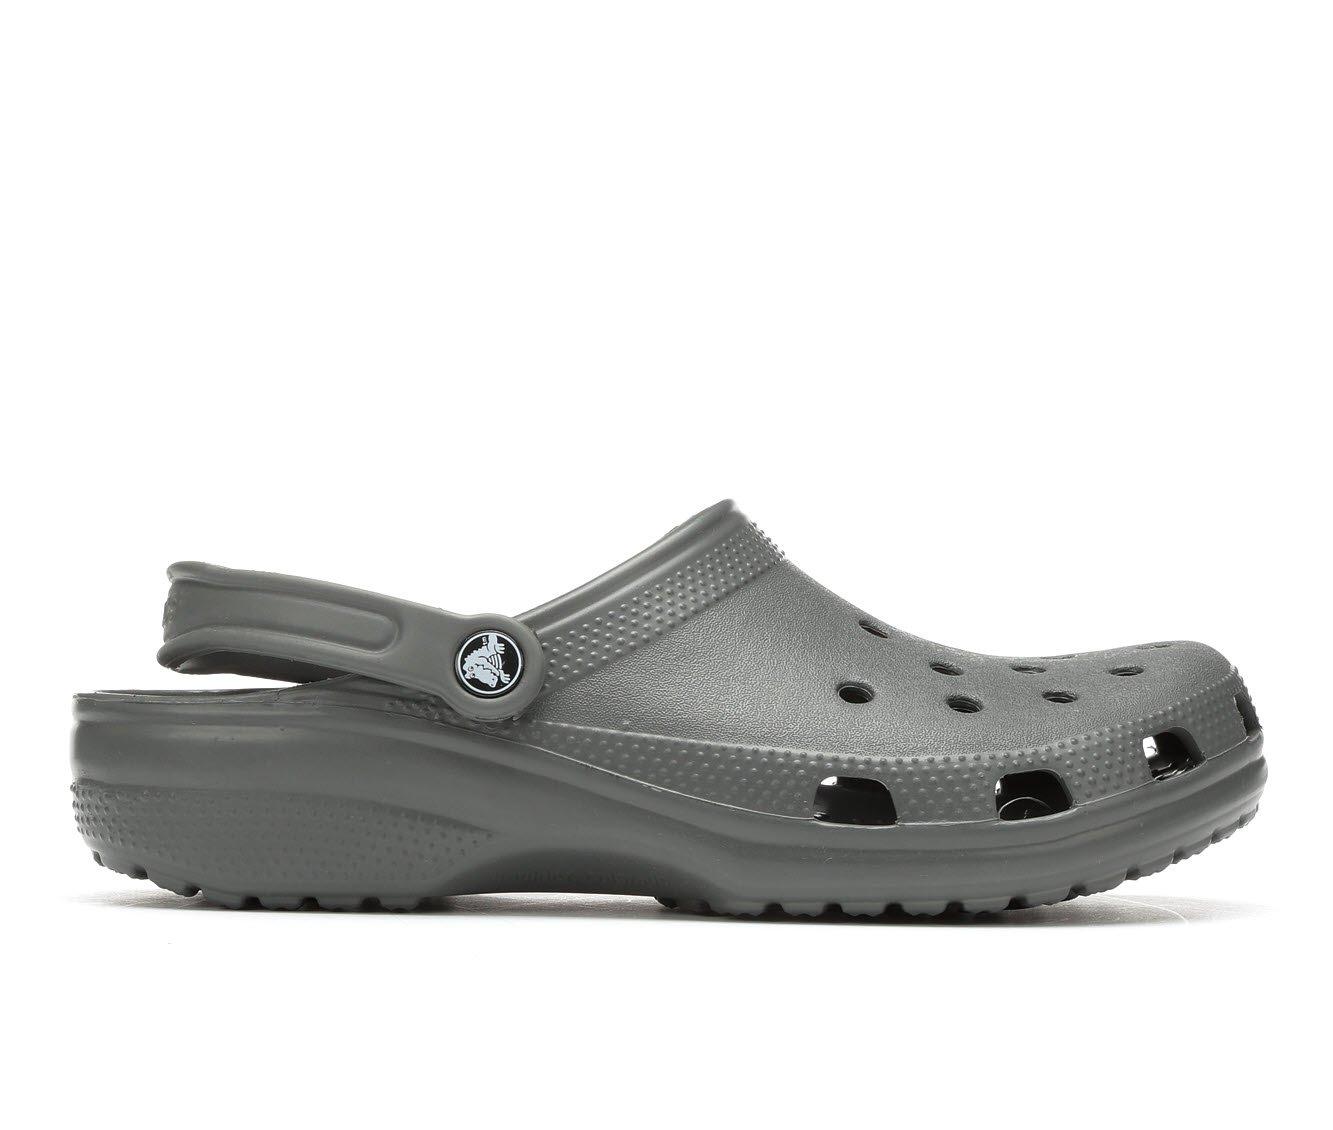 Men's Crocs Shoes | Shoe Carnival